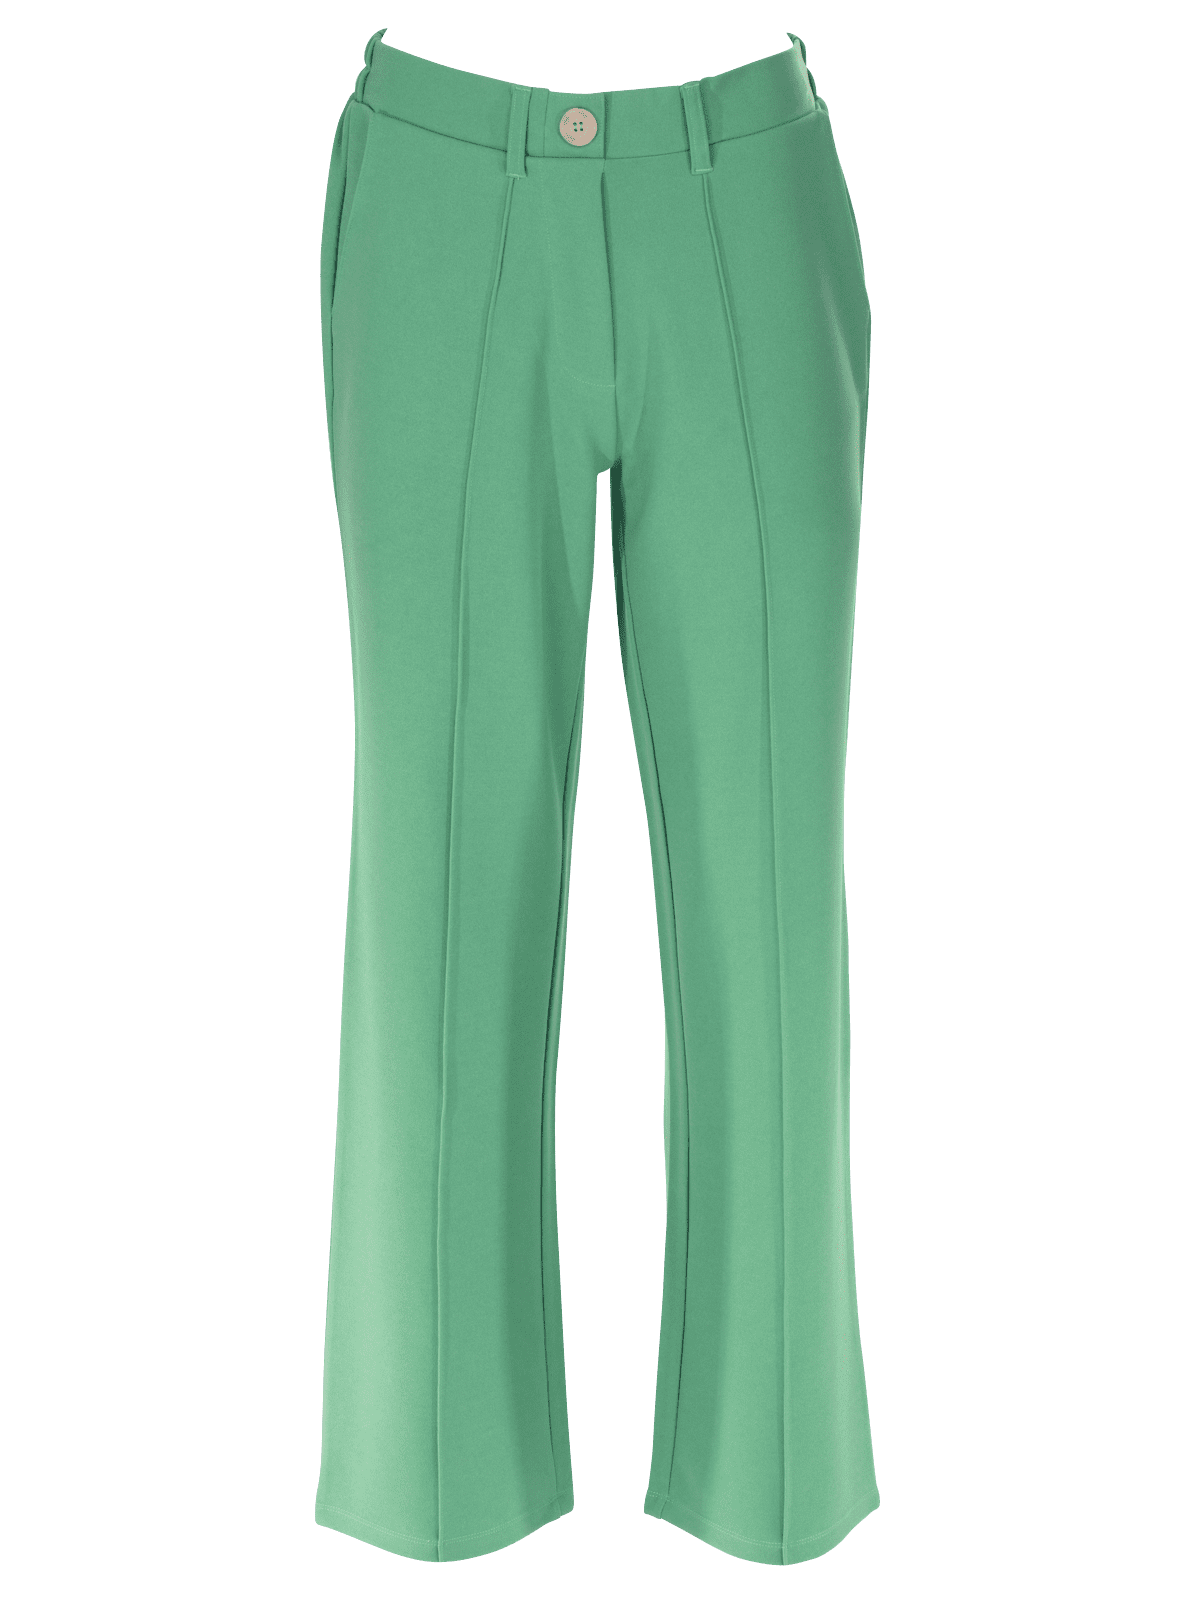 Pantalon avec couture - grande taille - Wibra France - Vous faites